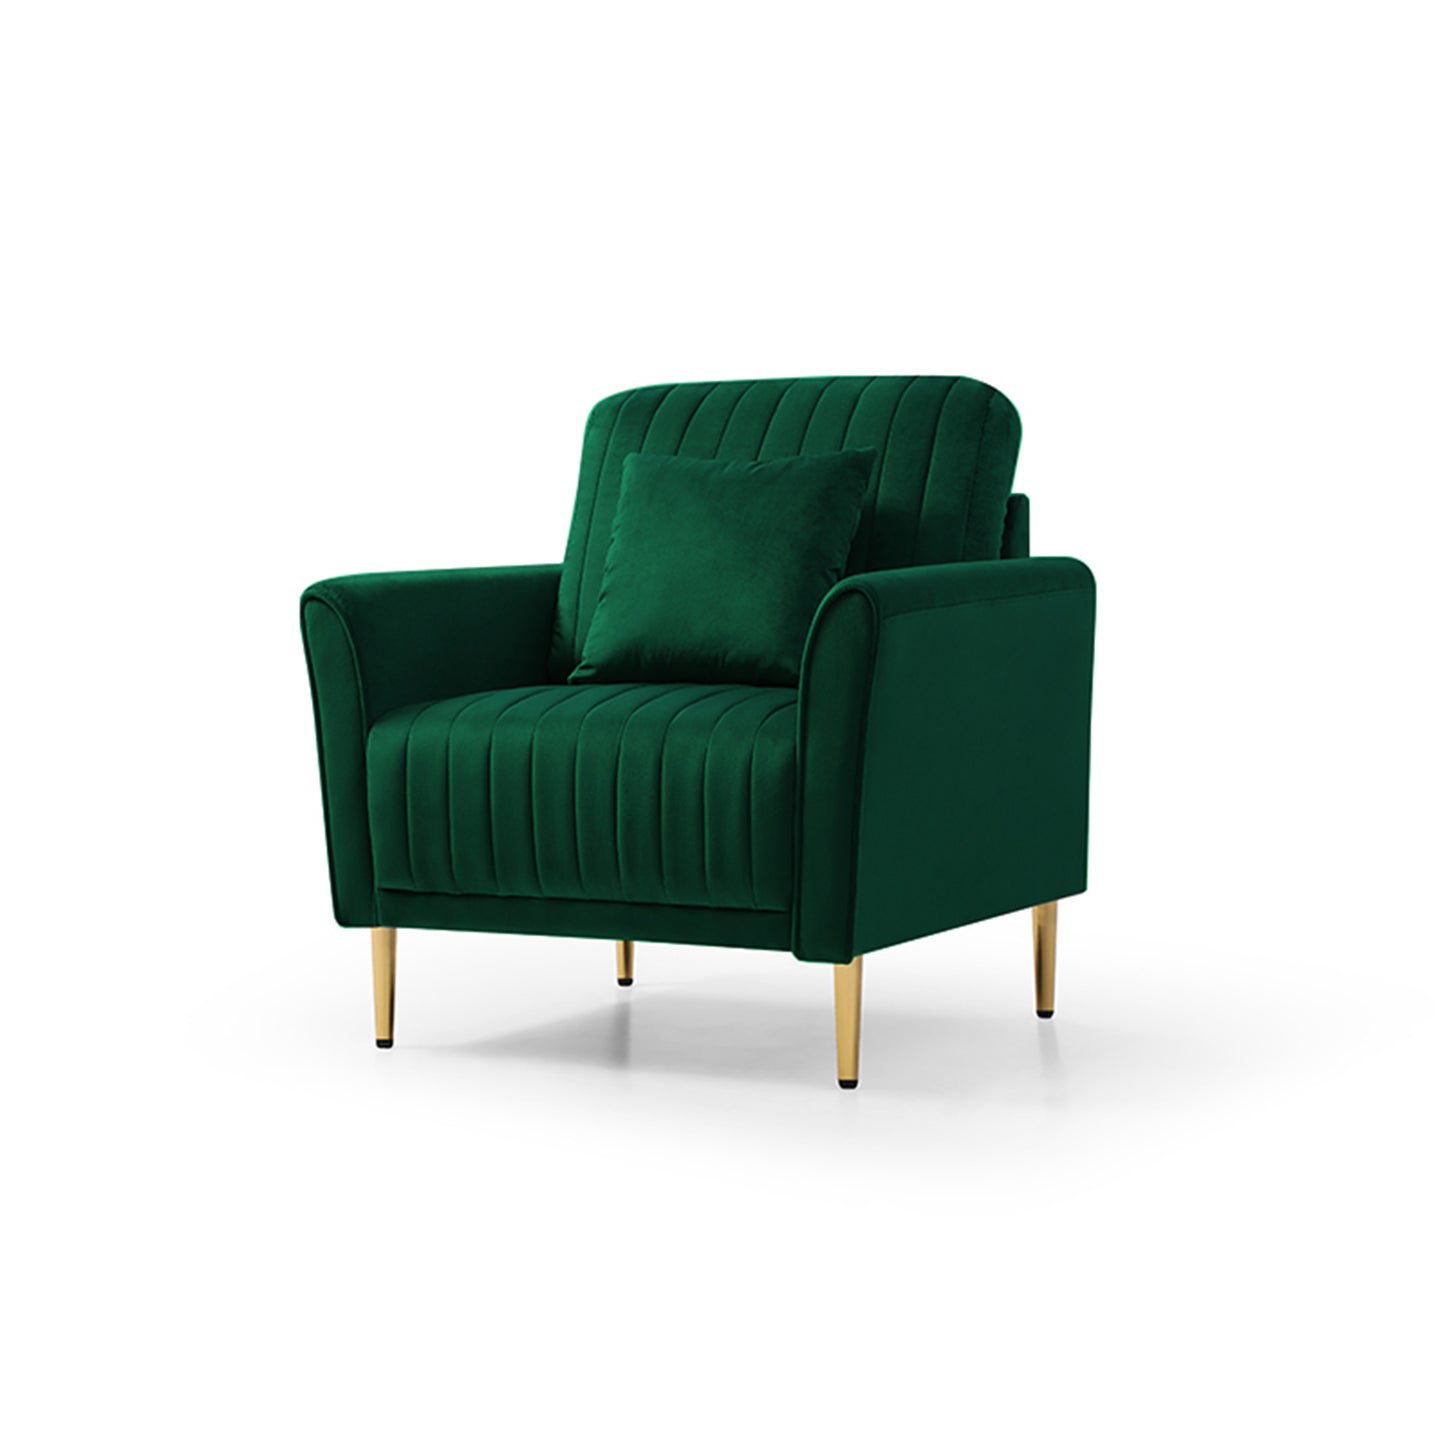 Channel Tufted Green Velvet Singel Living Room Sofa Accent Chair